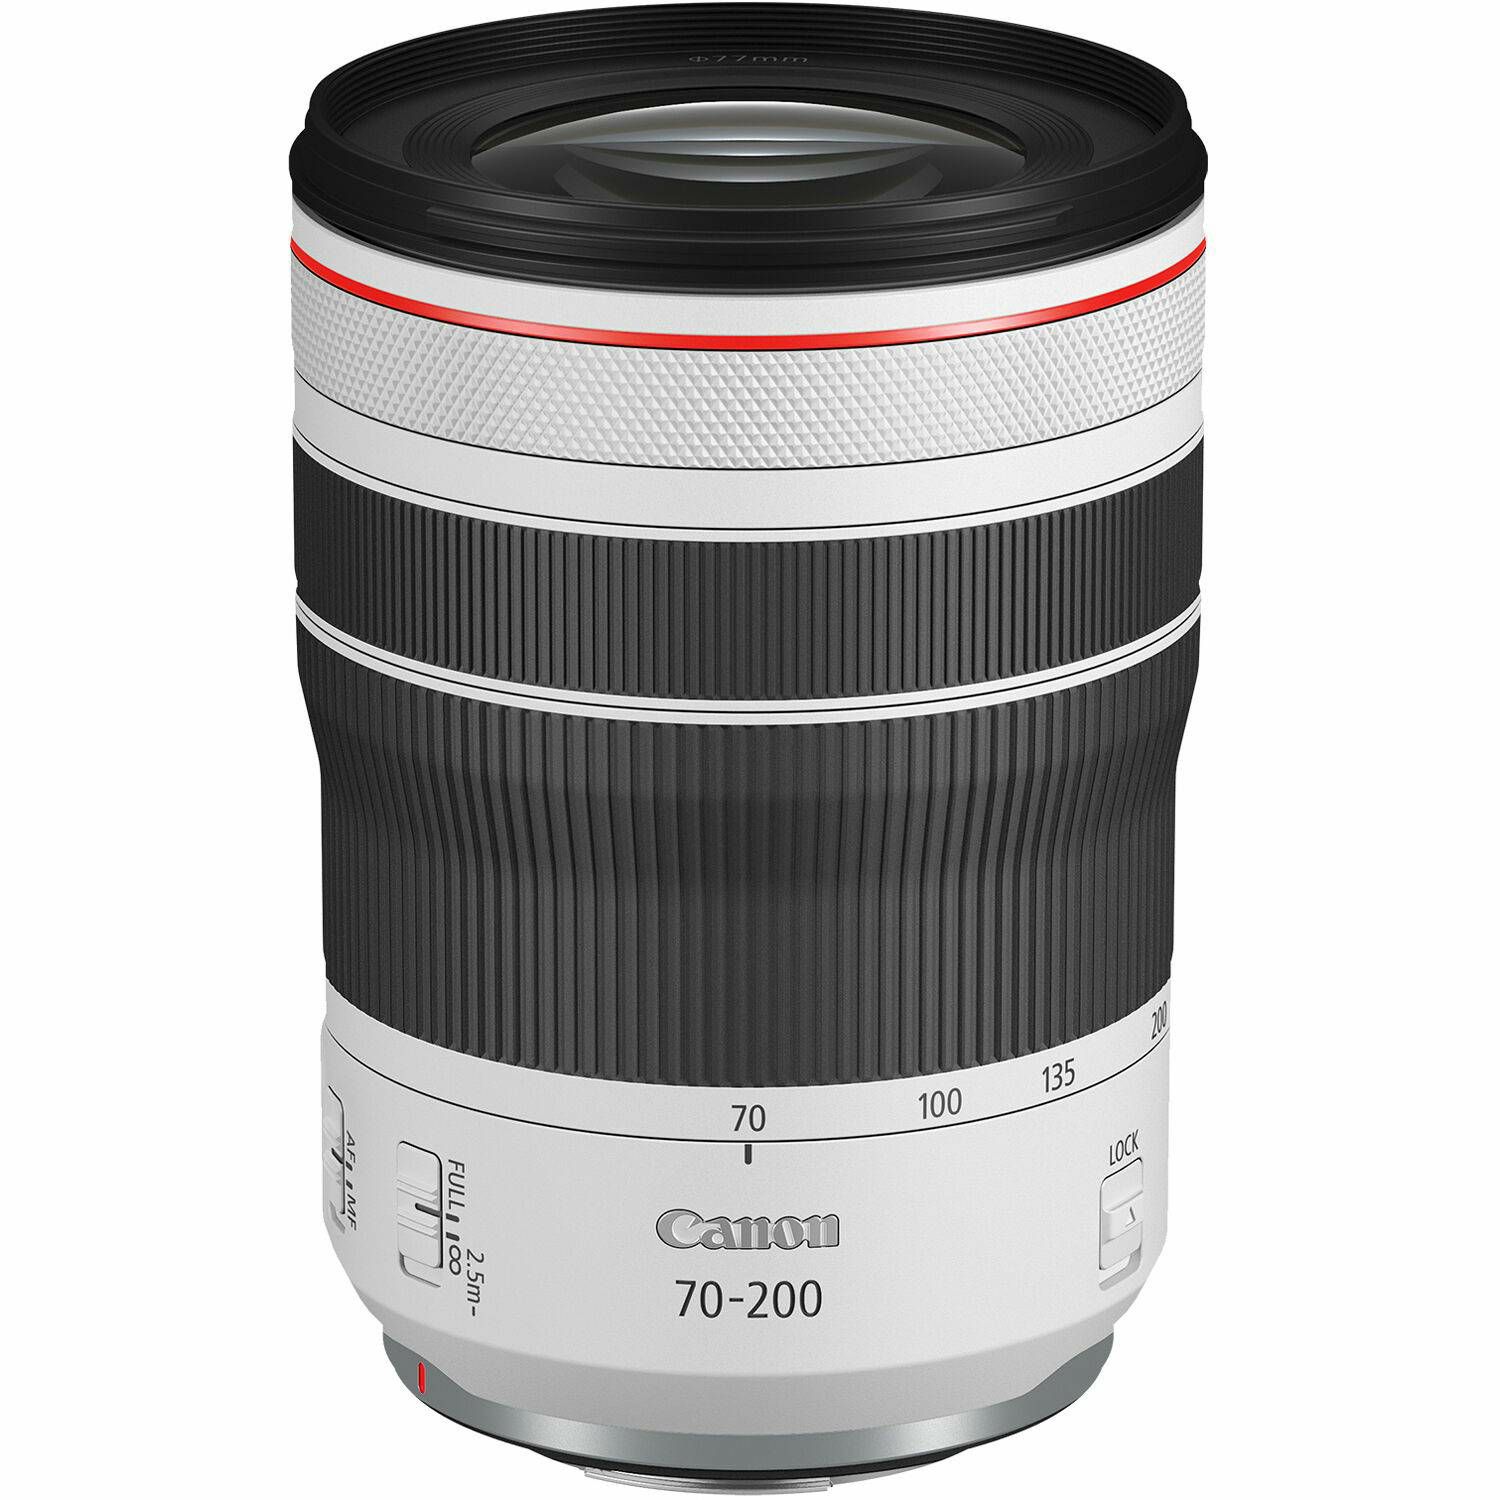 Canon RF 70-200mm f/4 L IS USM telefoto objektiv (4318C005AA)